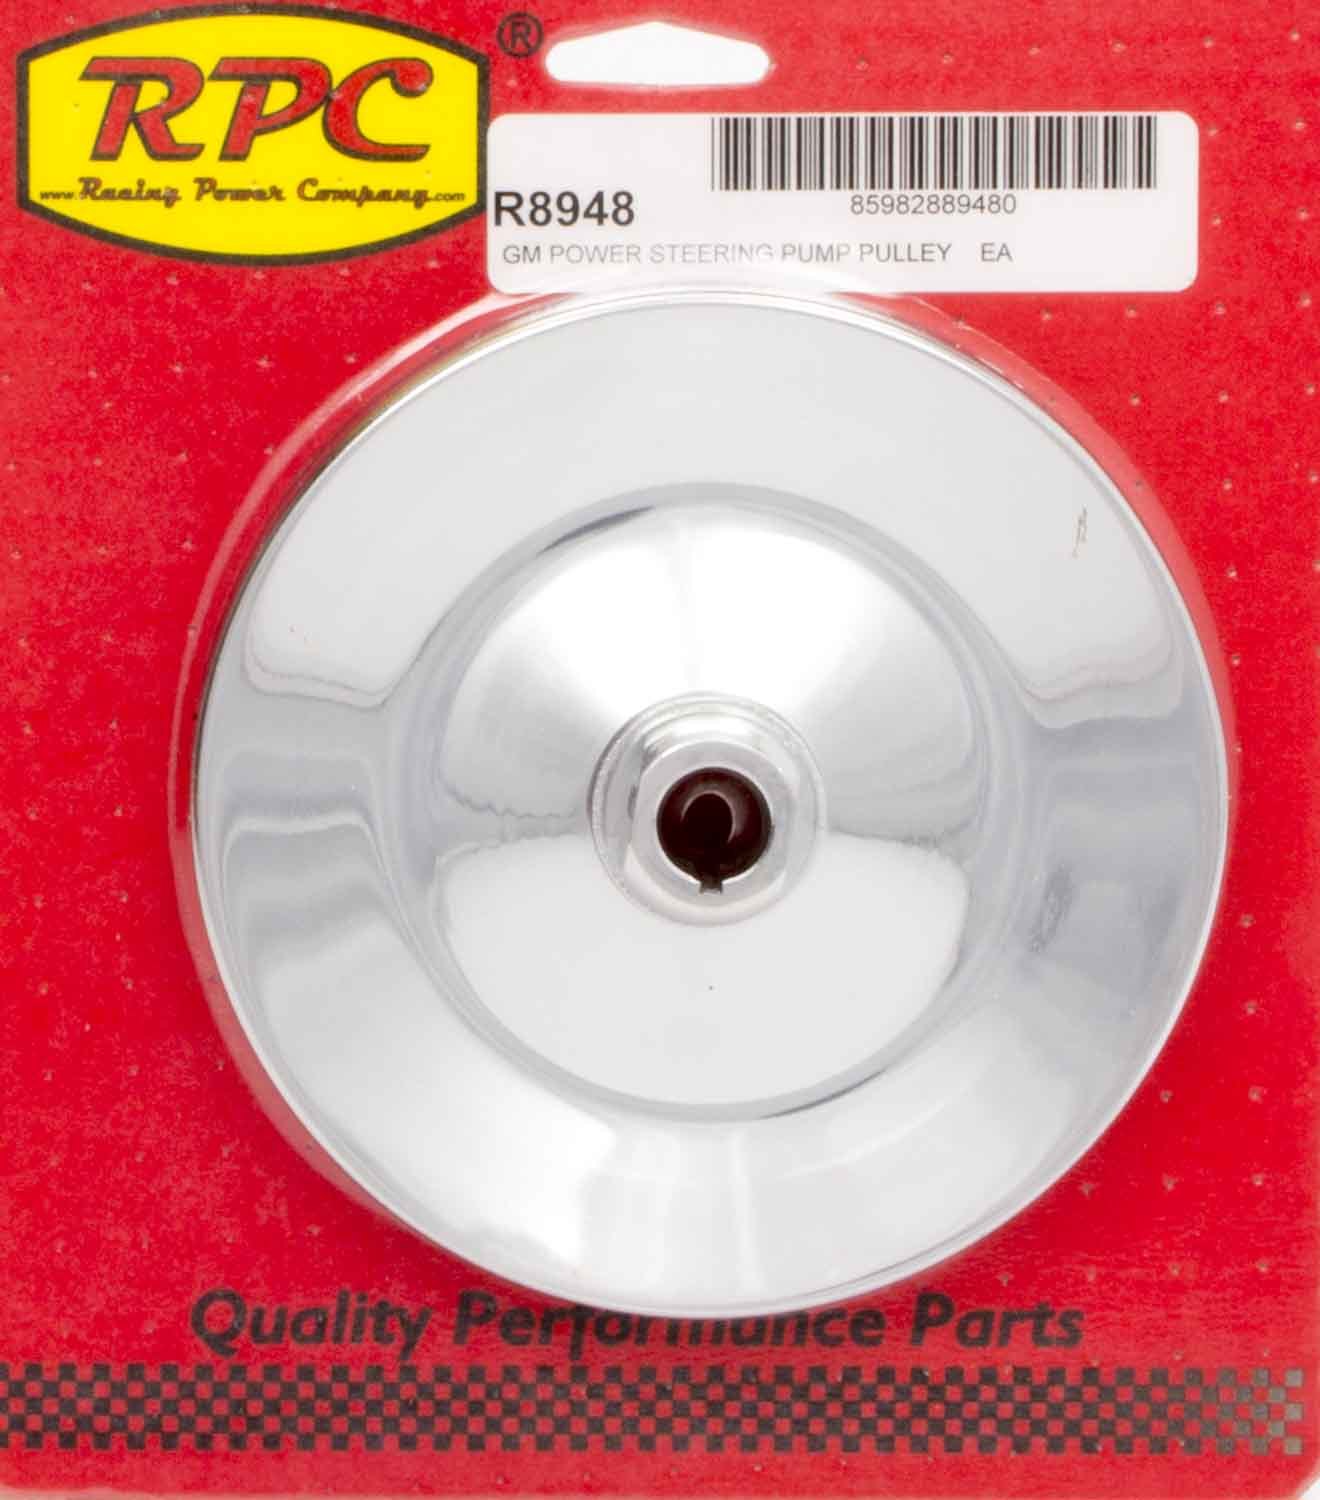 Racing Power Company R8948 Power Steering Pulley, V-Belt, 1 Groove, Keyed, 5.875 in Diameter, Steel, Chrome, Saginaw, Each